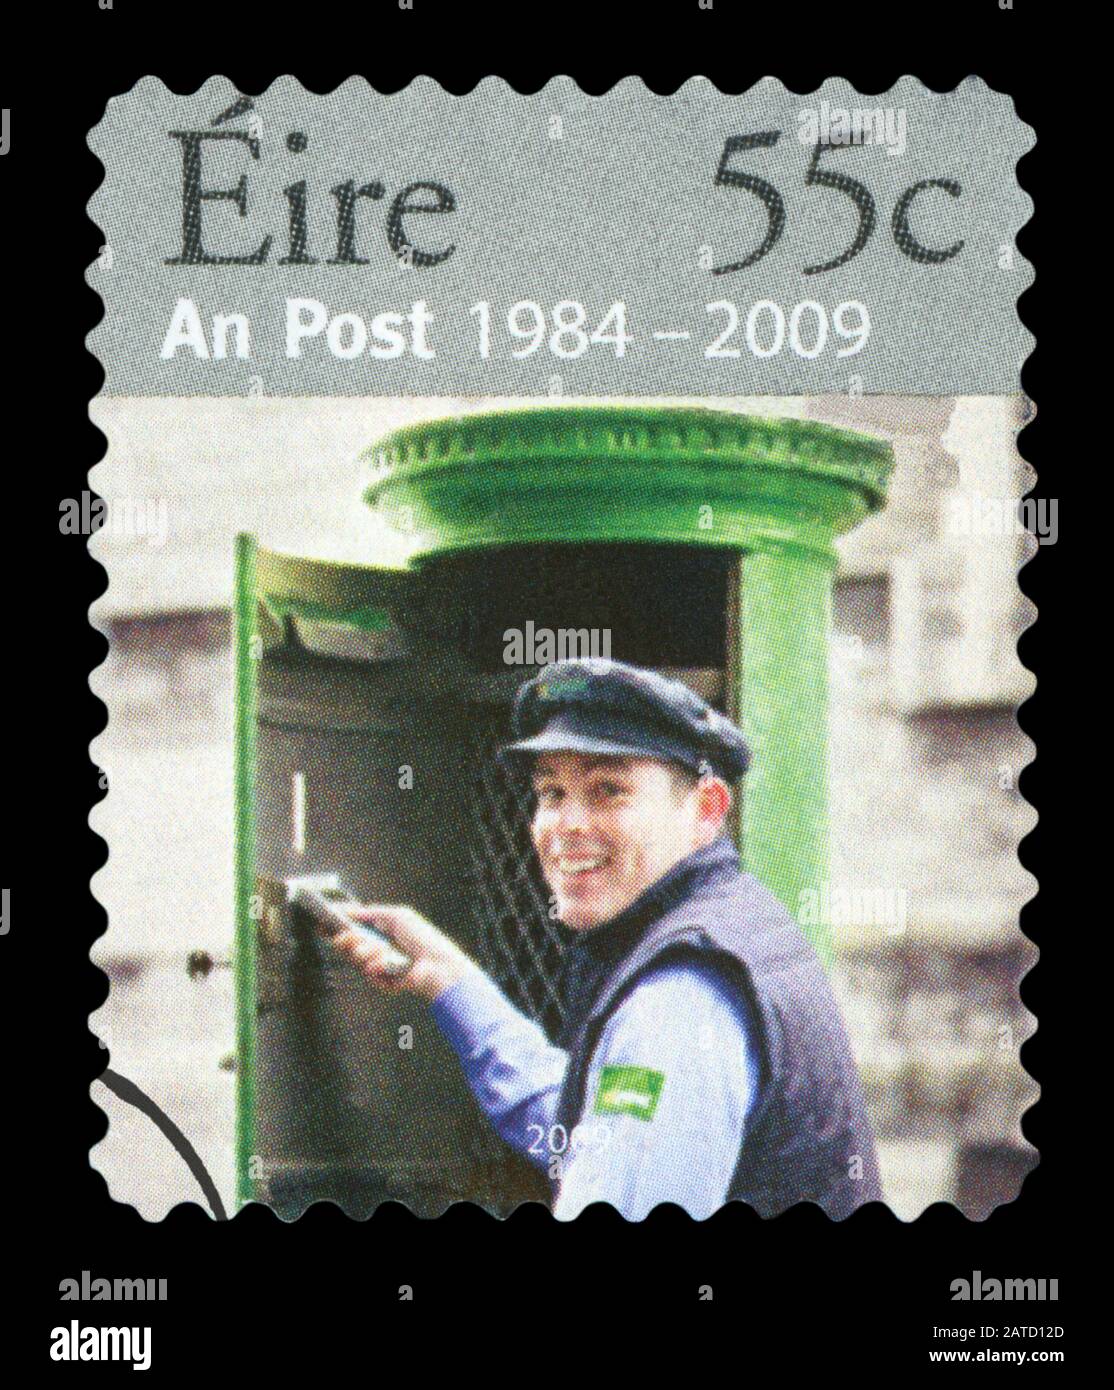 Irland - CIRCA 2009: Eine Briefmarke aus Irland, die von 1984 bis 2009, ca. 2009, eine Post Eire darstellt, wurde storniert. Stockfoto